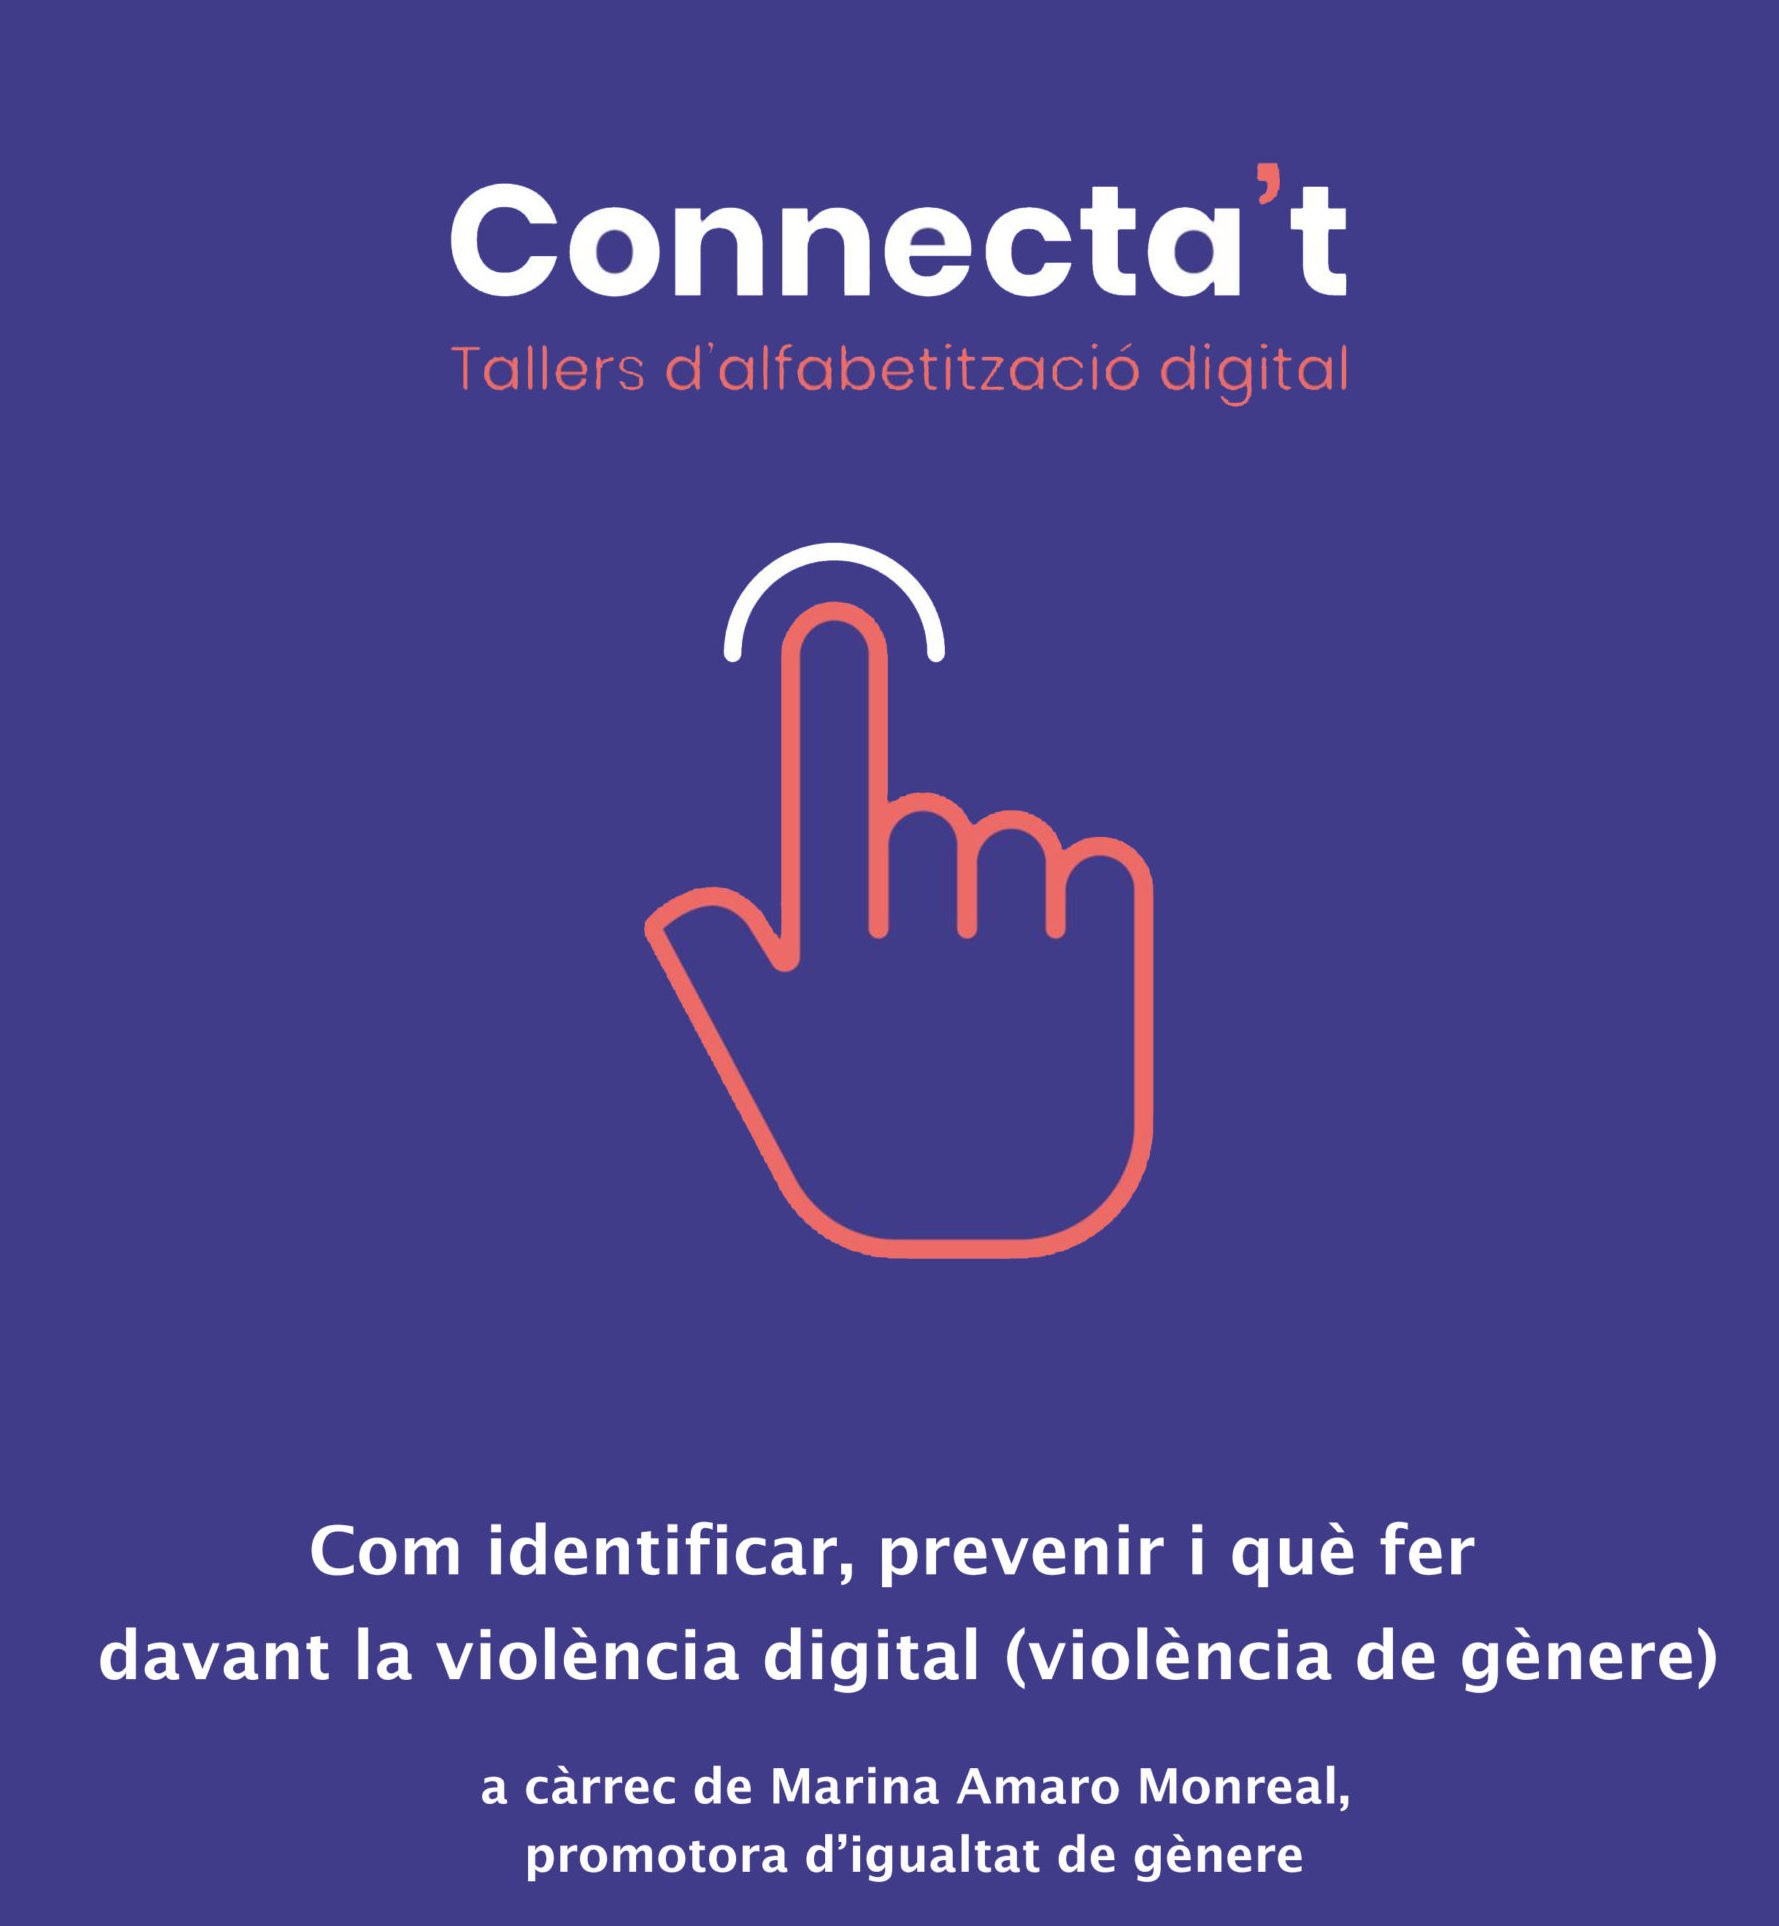 “Com identificar, prevenir i què fer davant la violència digital (violència de gènere)” a càrrec de Marina Amaro Monreal, promotora d’igualtat de gènere.